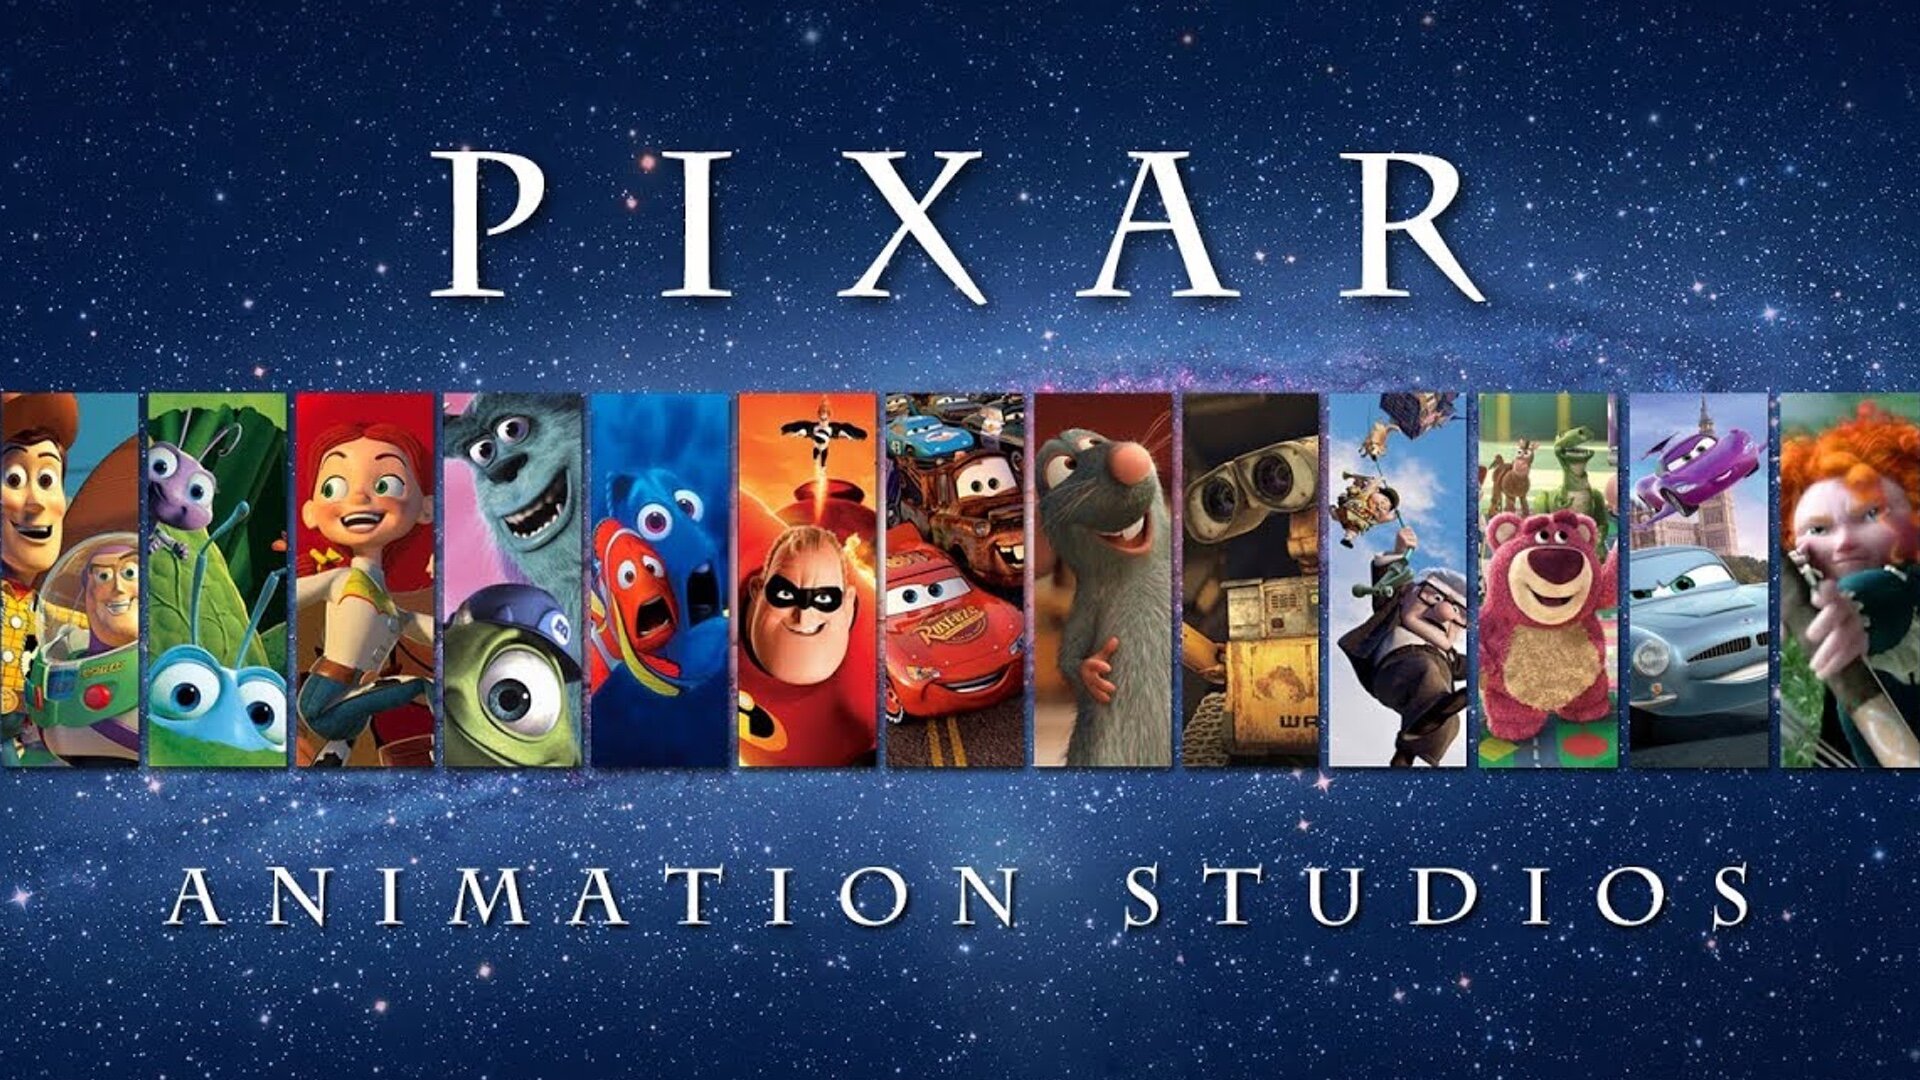 Every new Pixar film